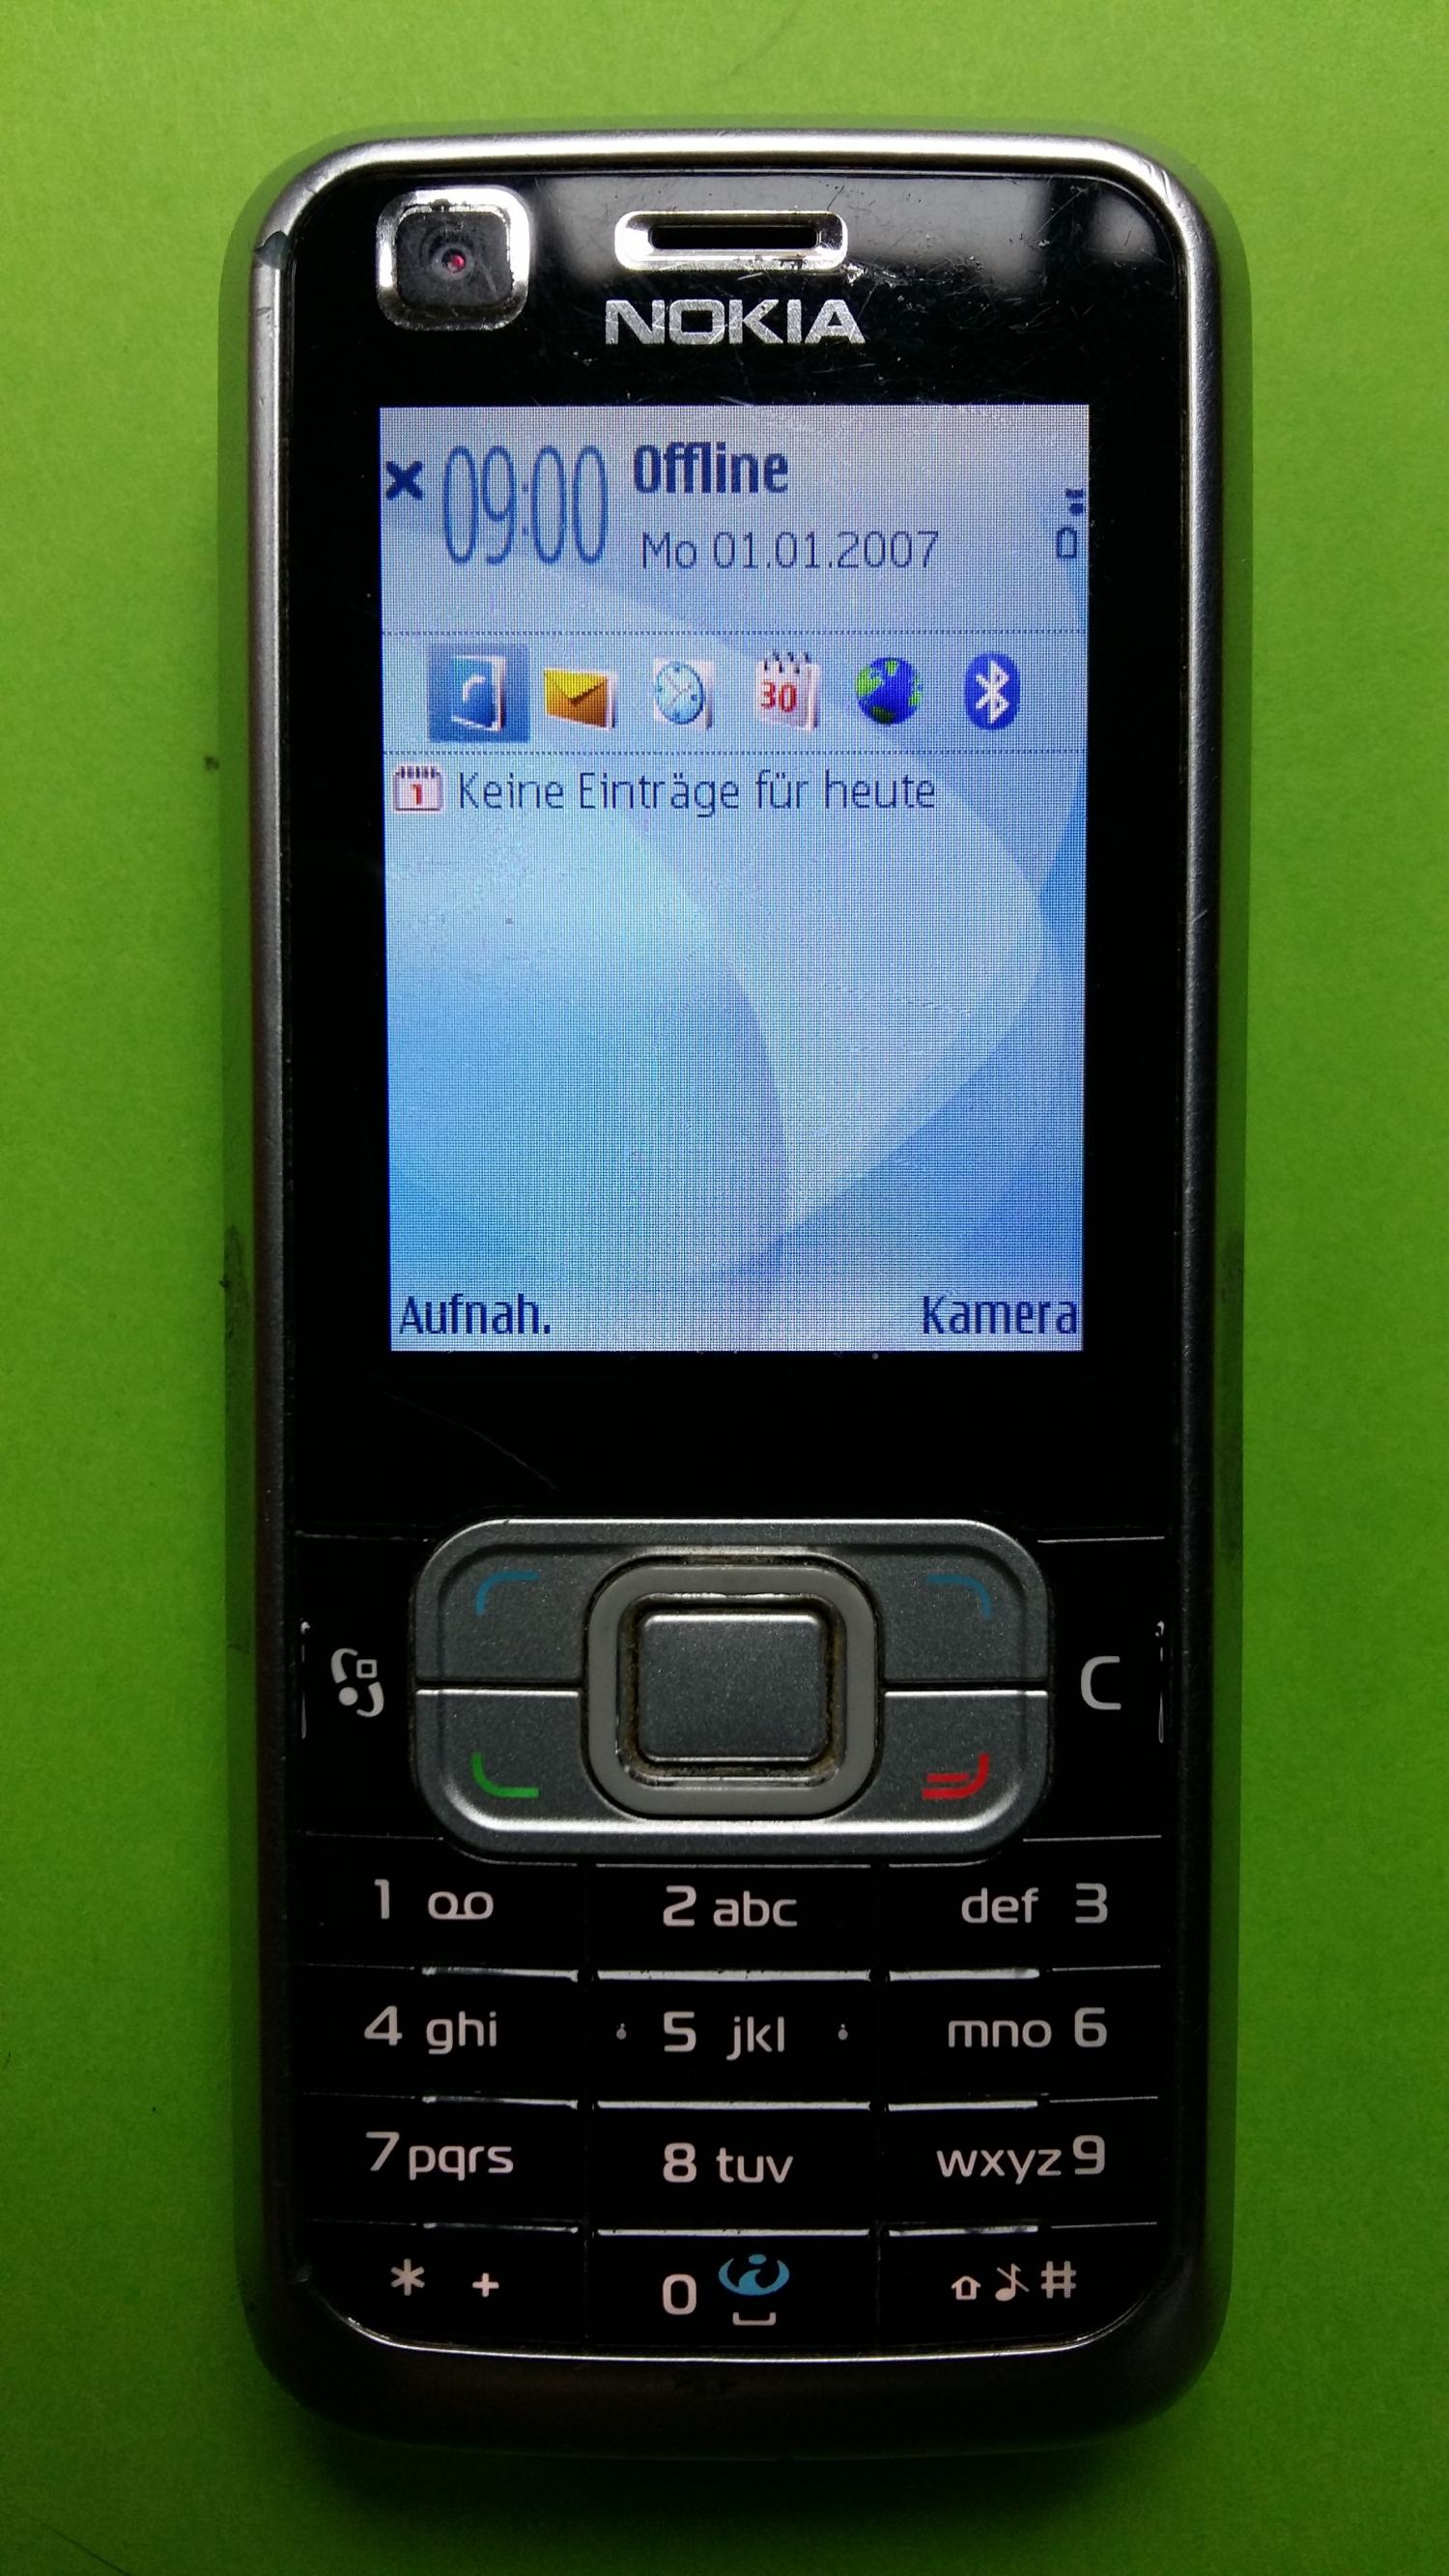 image-7305092-Nokia 6120C-1 (1)1.jpg